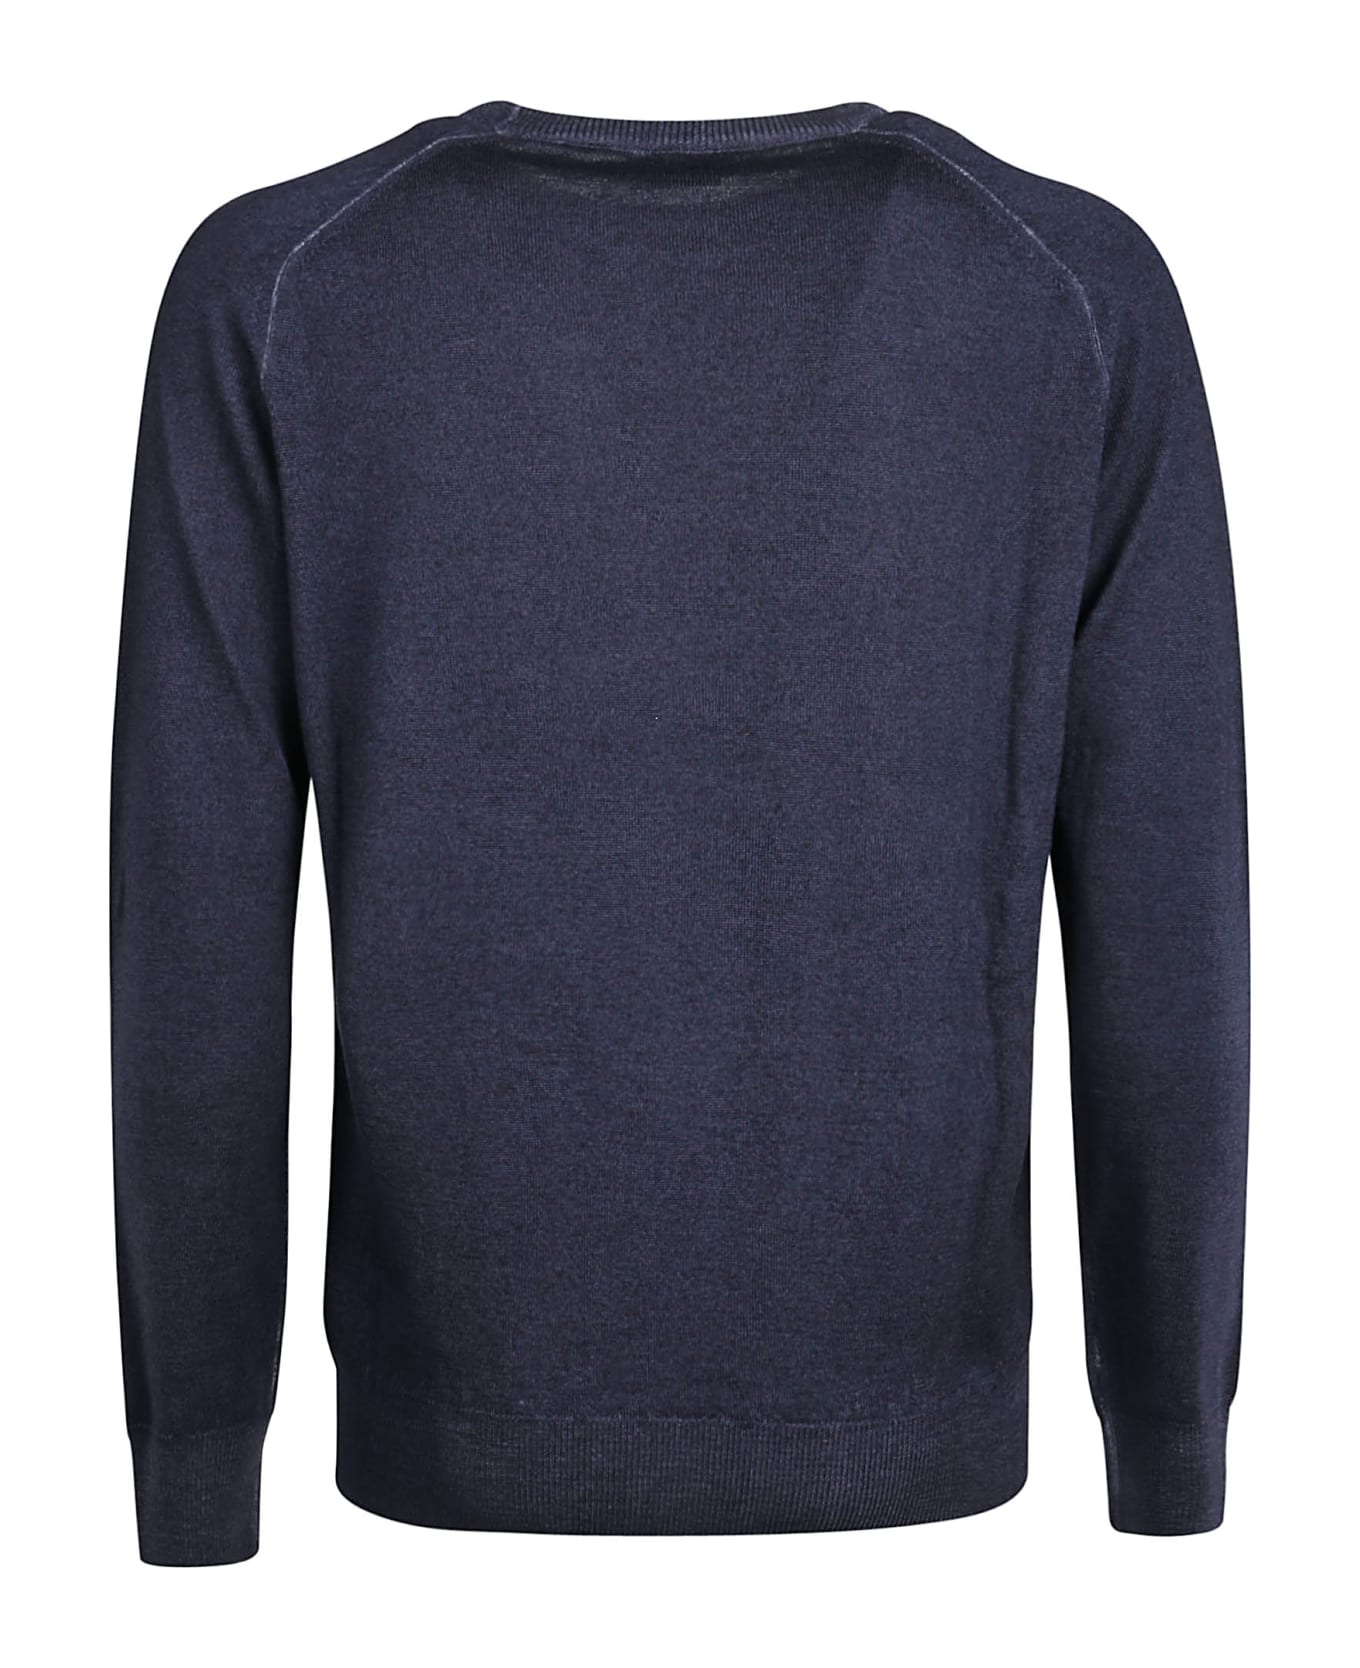 Etro Round Neck Sweater - Blu Navy